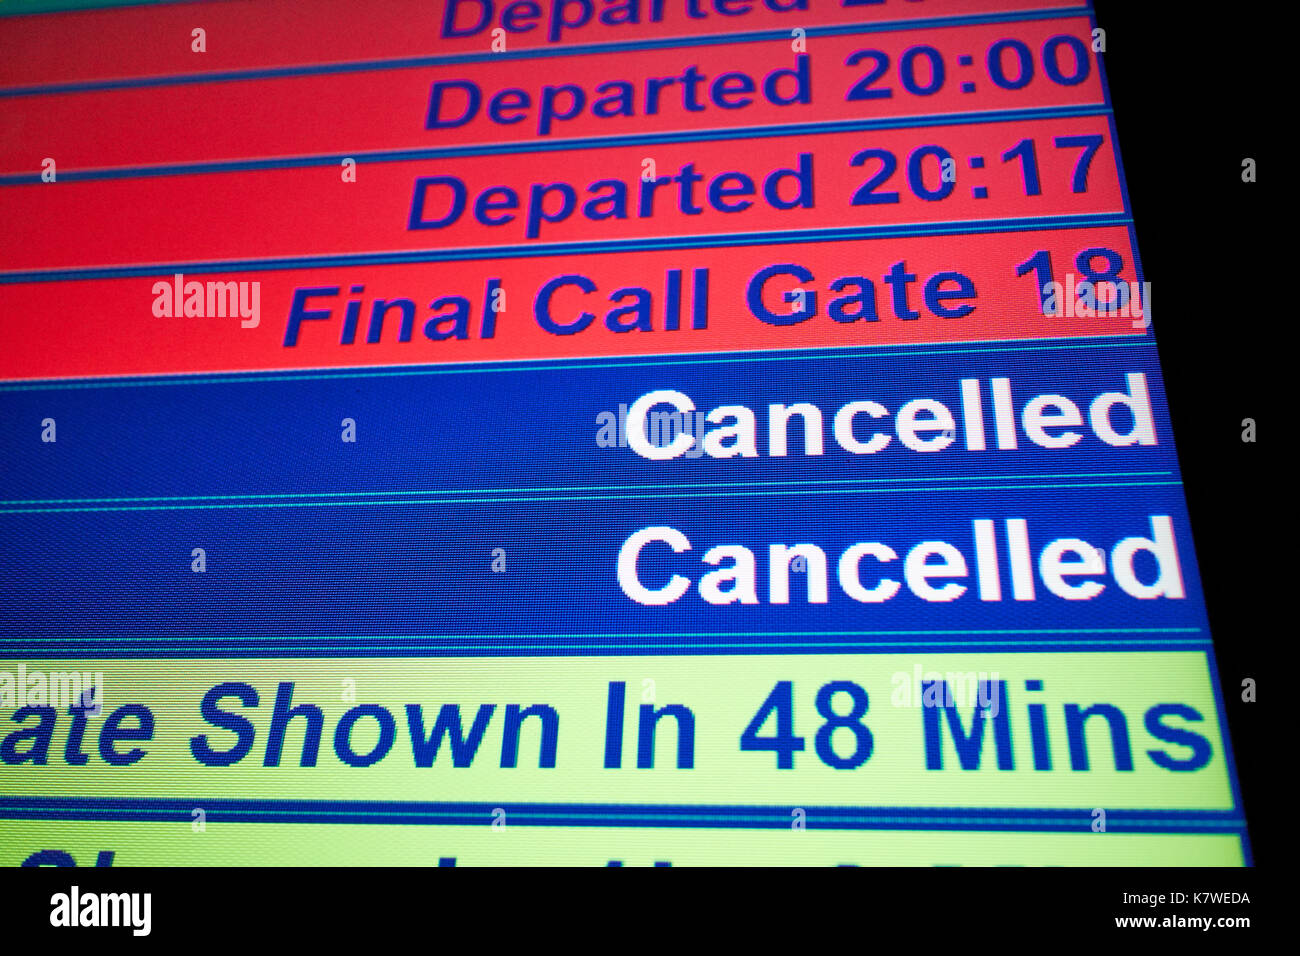 Flughafen Fluginformationen Bildschirm mit Verstorbenen, Final Call und Annullierung von Flügen Stockfoto